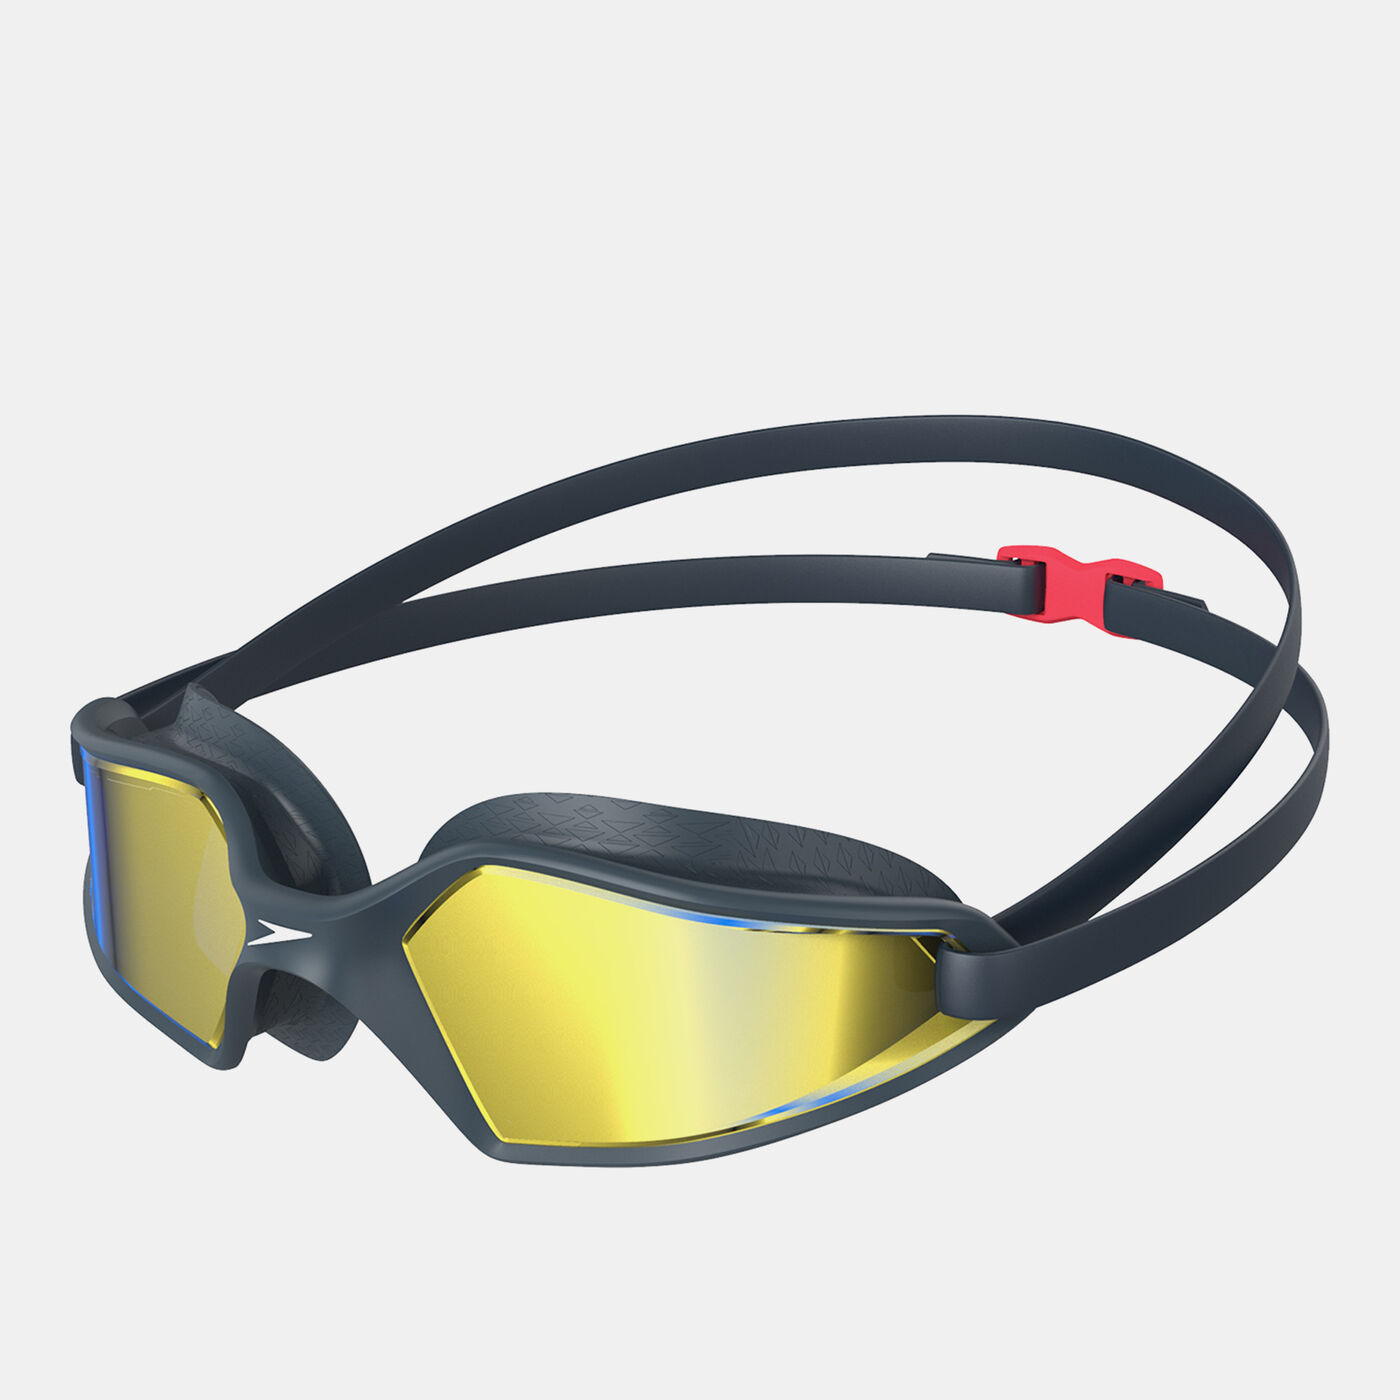 Hydropulse Mirror Swimming Goggles